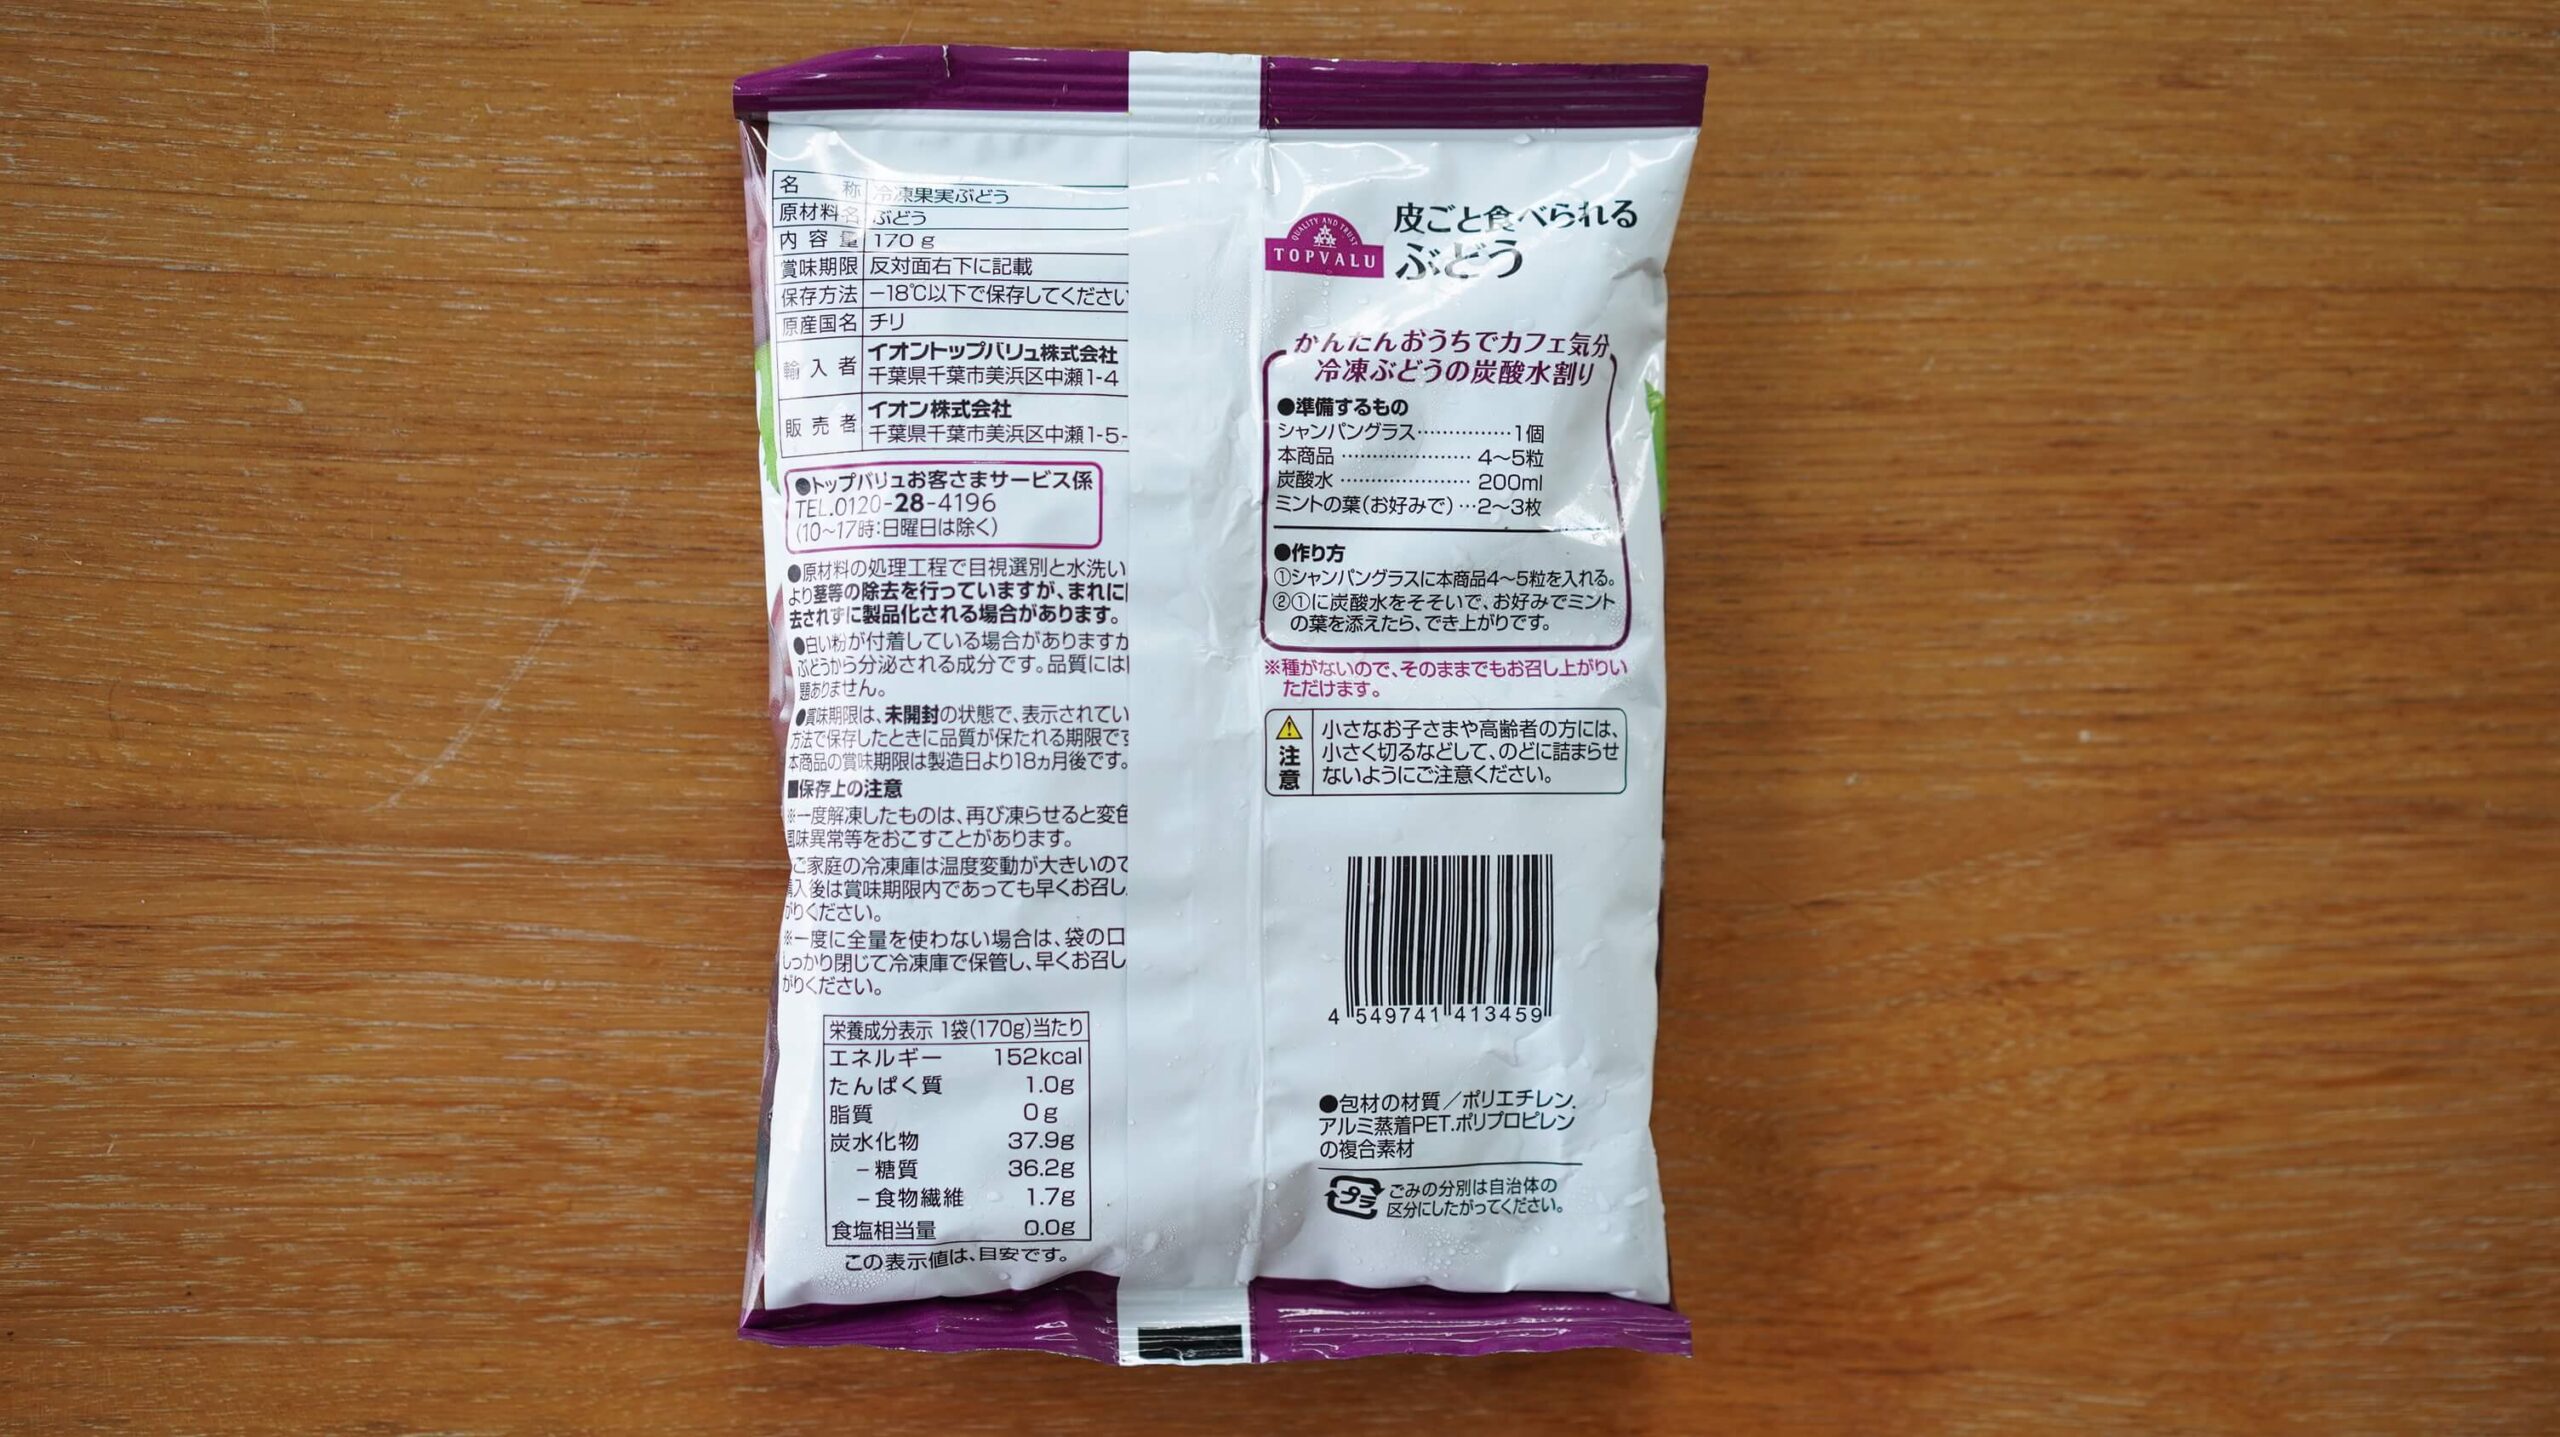 イオンの冷凍食品フルーツ「皮ごと食べられるぶどう」のパッケージ裏面の写真